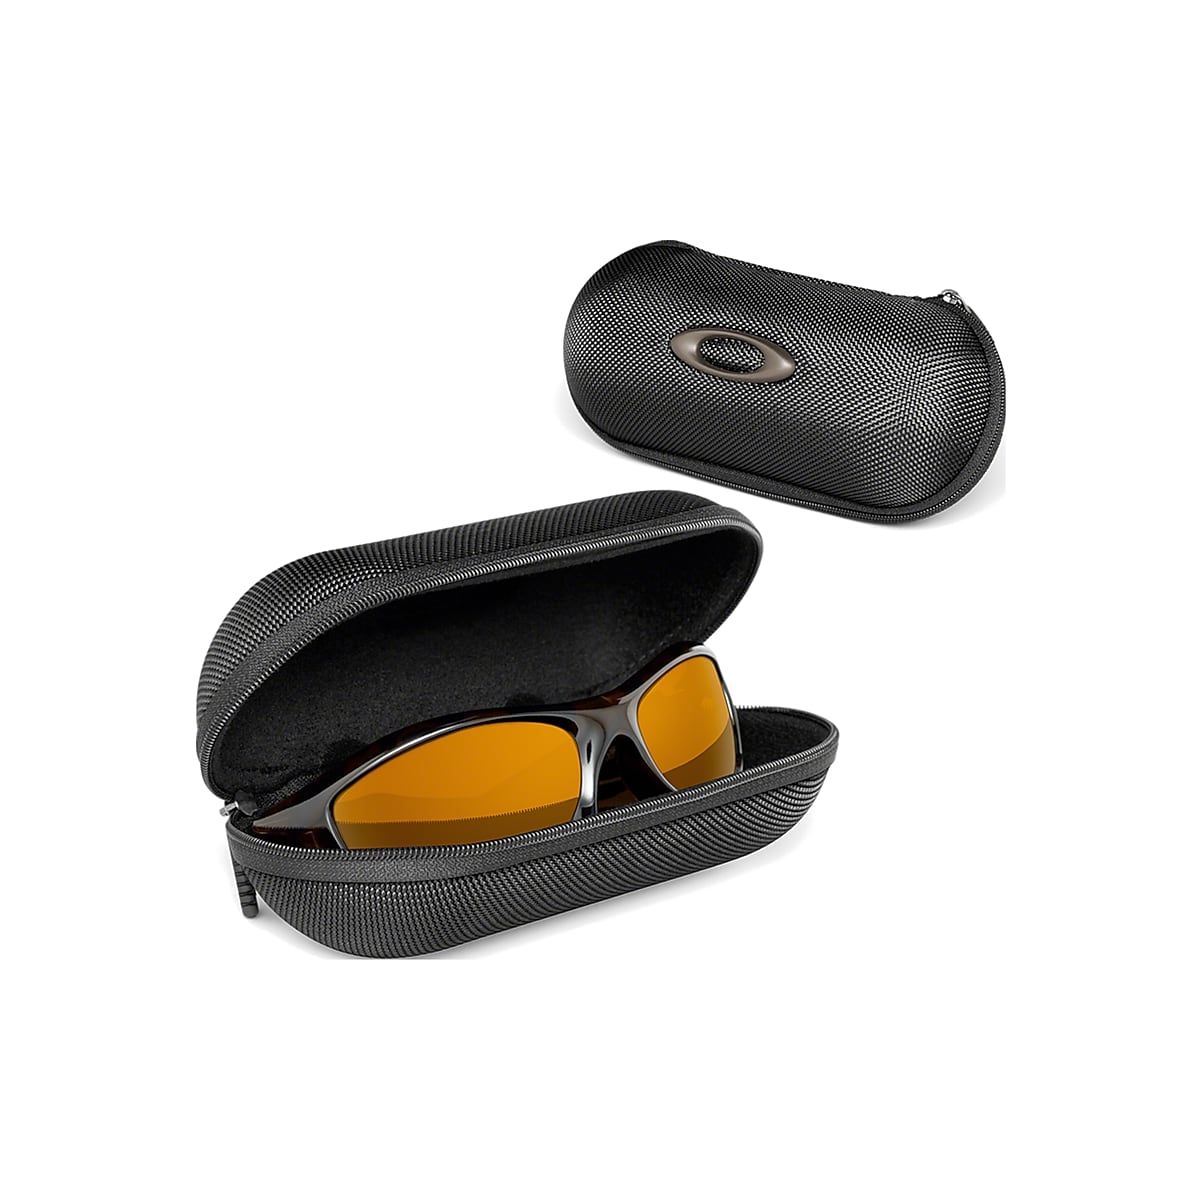 Do Oakley sunglasses come with a case?